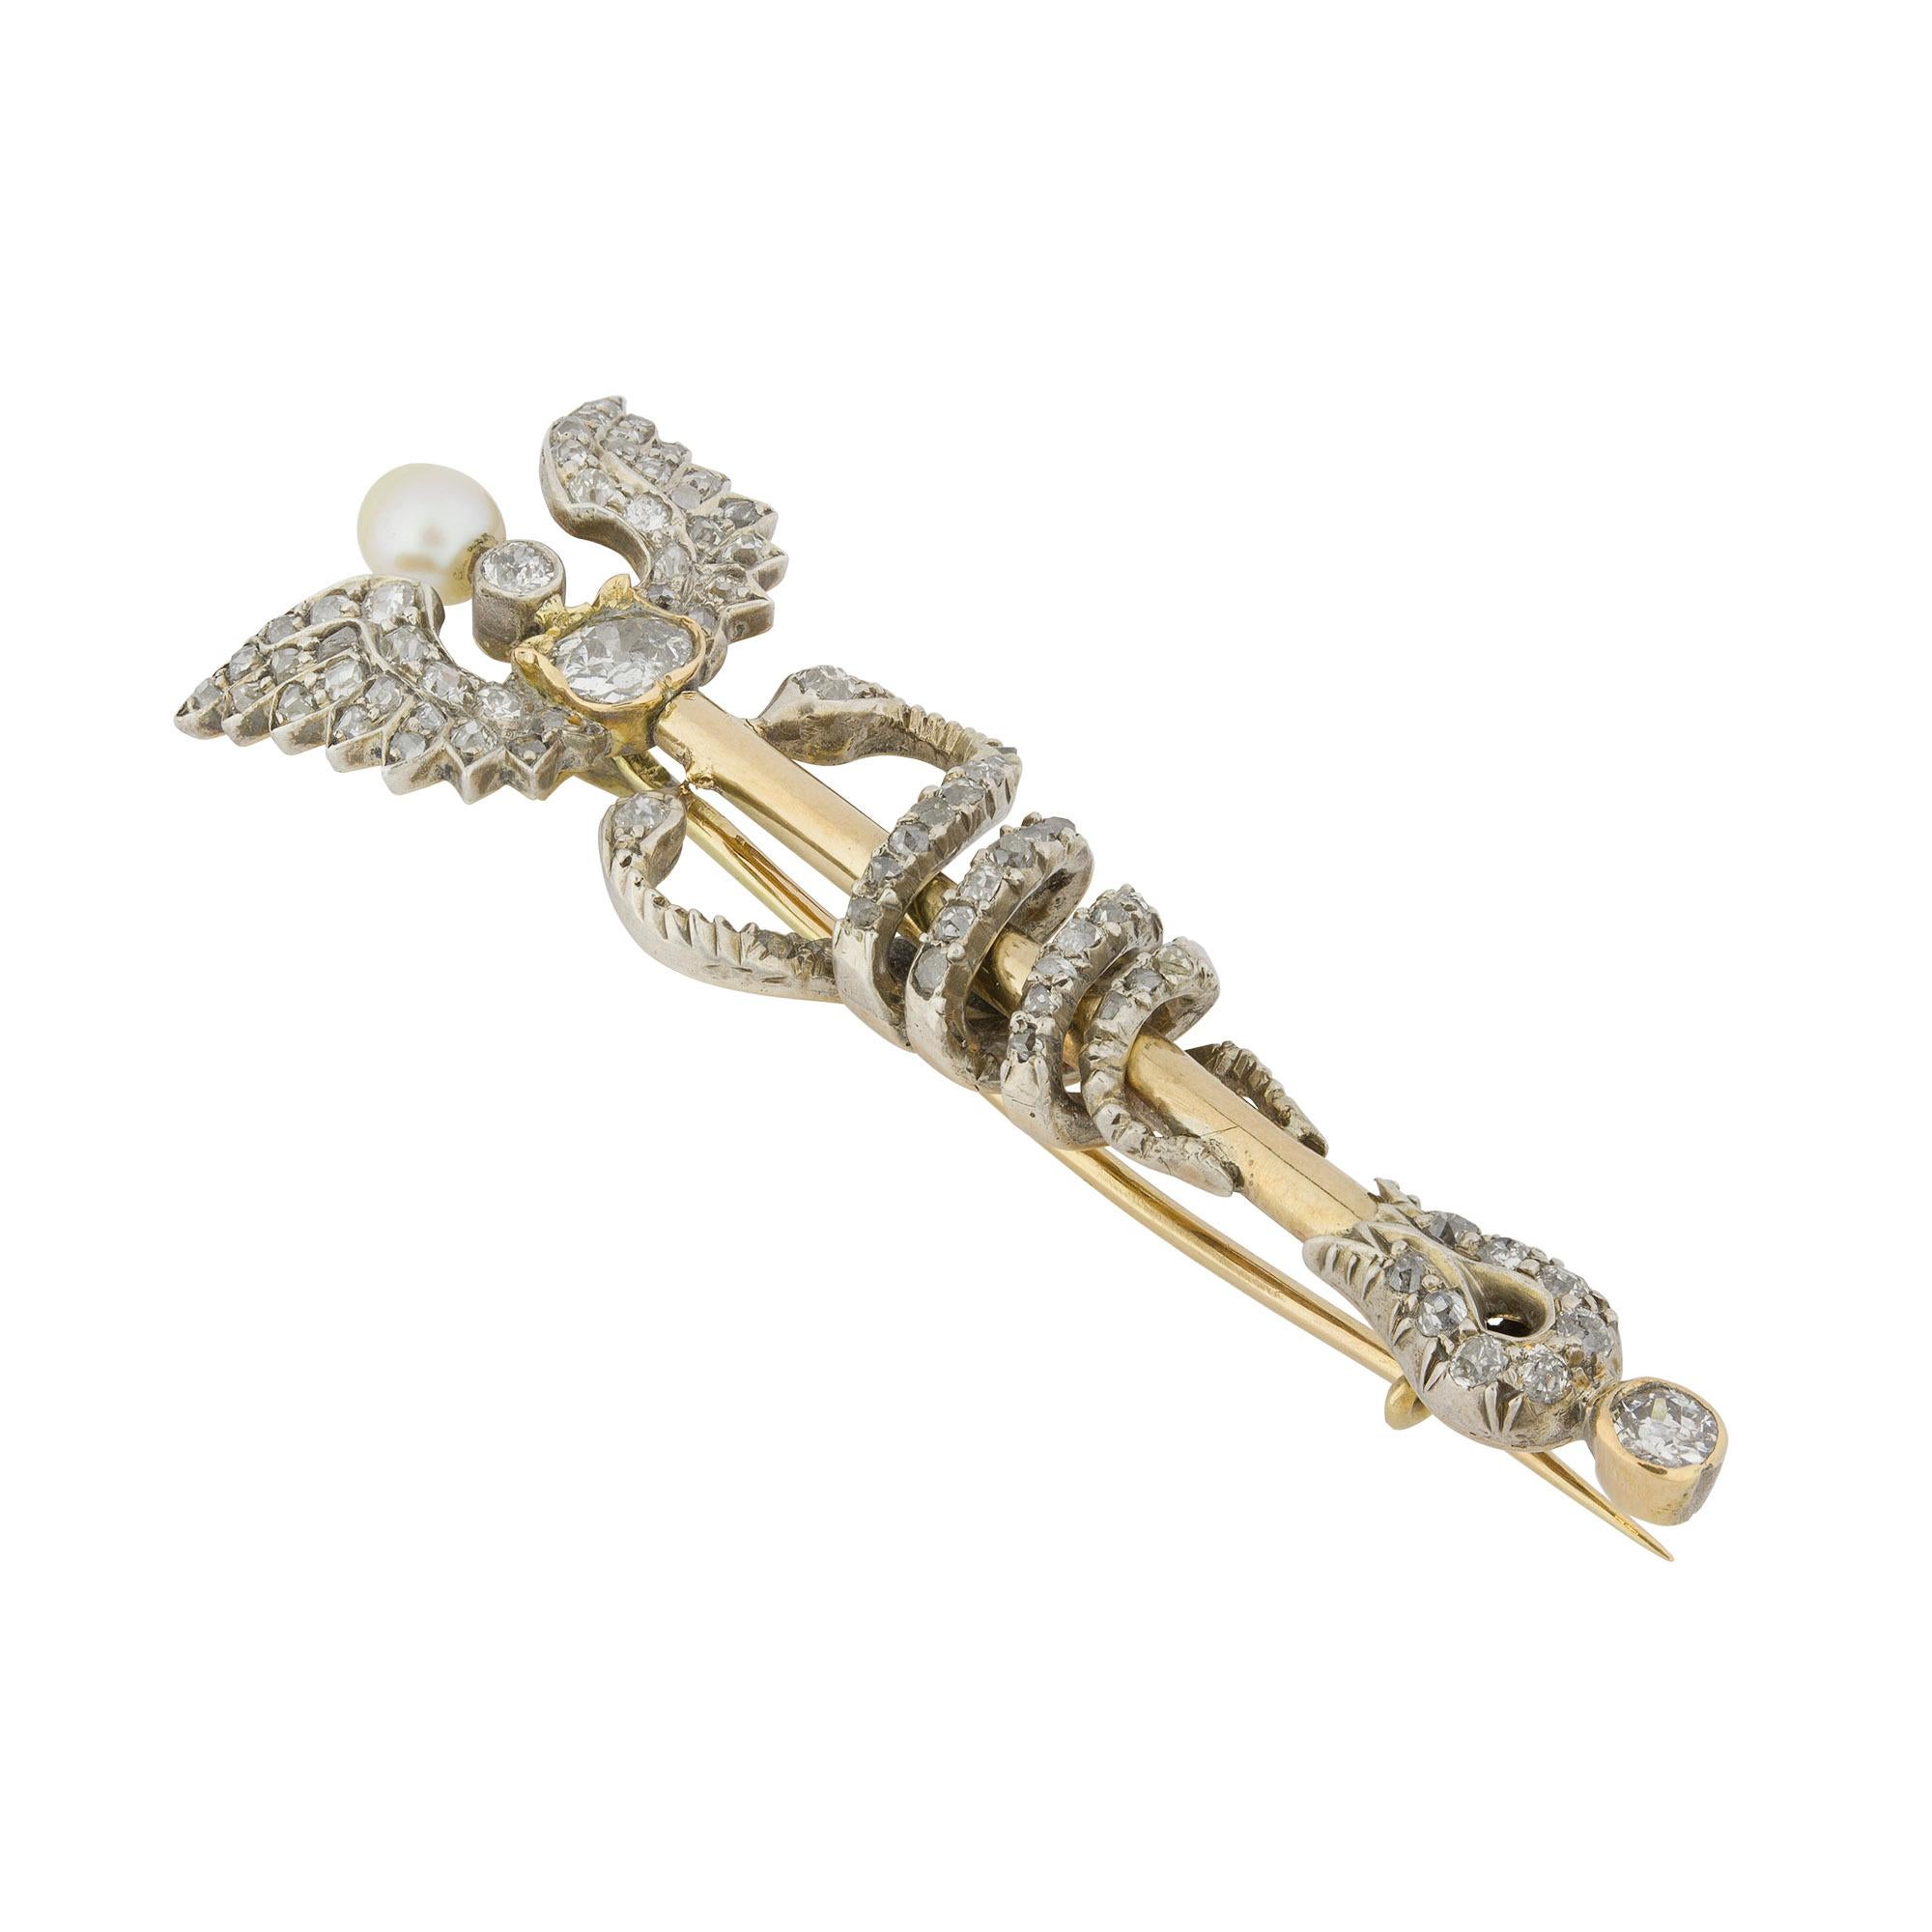 Eine spätviktorianische Caduceus-Brosche aus Gelbgold und Diamanten, der geflügelte Stab ist durchgehend weiß gekrallt und mit alten Diamanten im Brillant- und Rosenschliff besetzt, in der Mitte befindet sich eine natürliche Perle, zwei